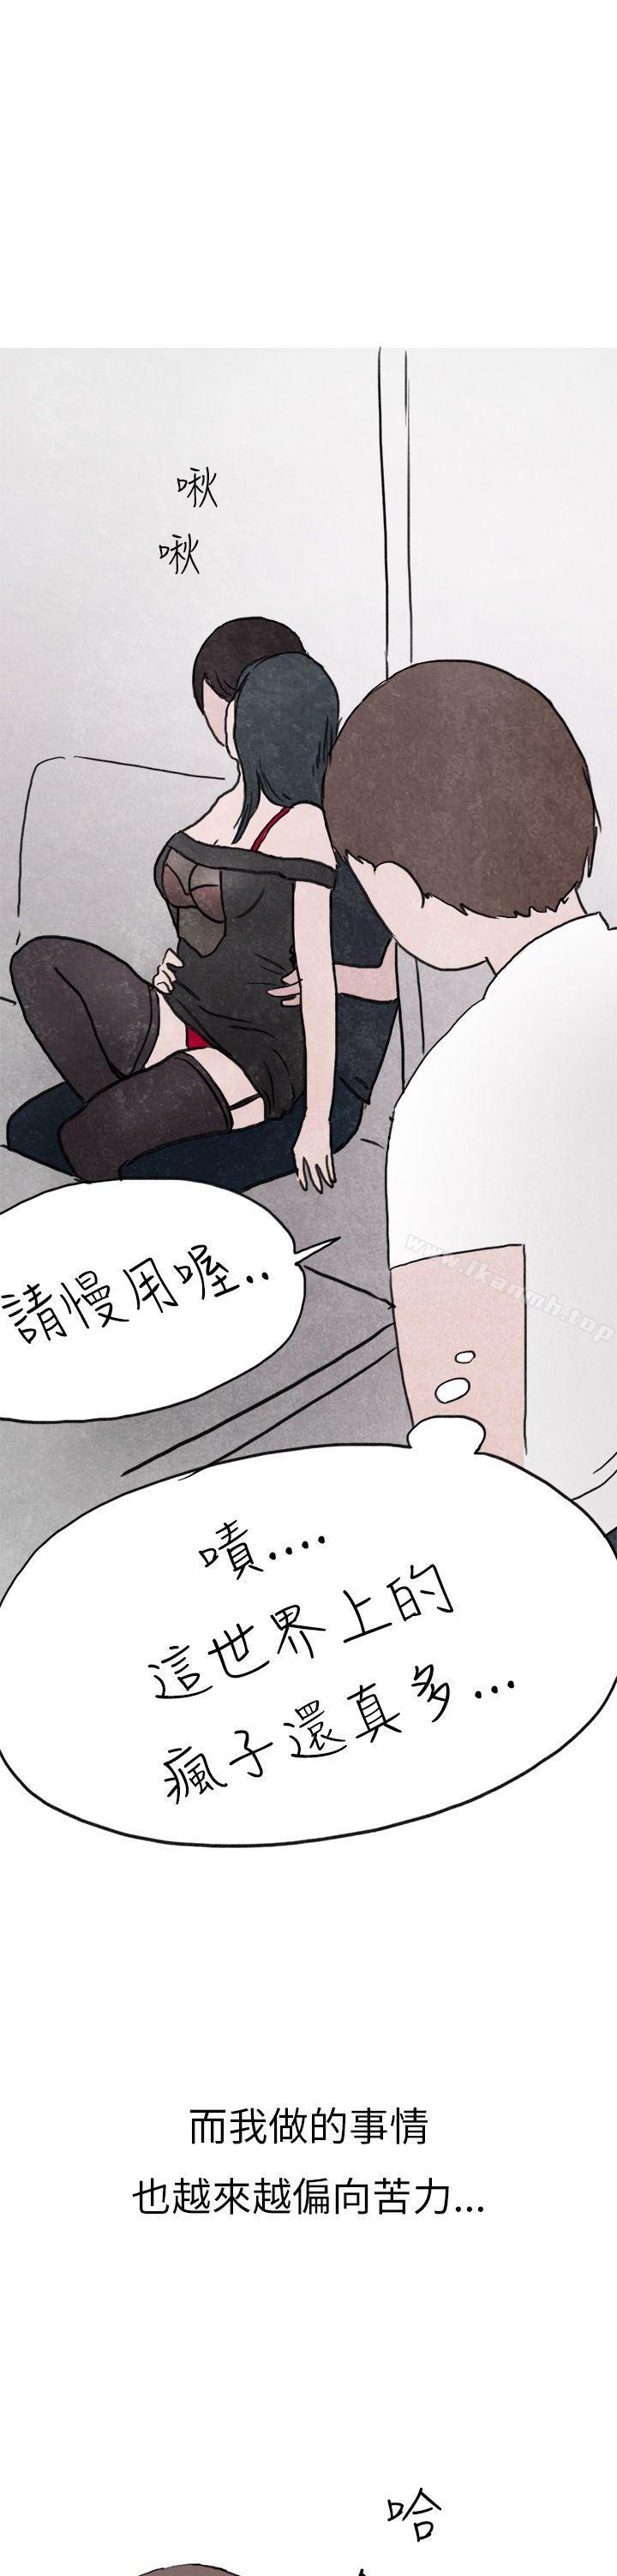 漫画韩国 秘密Story第二季   - 立即阅读 第二季 啤酒屋冷漠的女同事(上)第17漫画图片